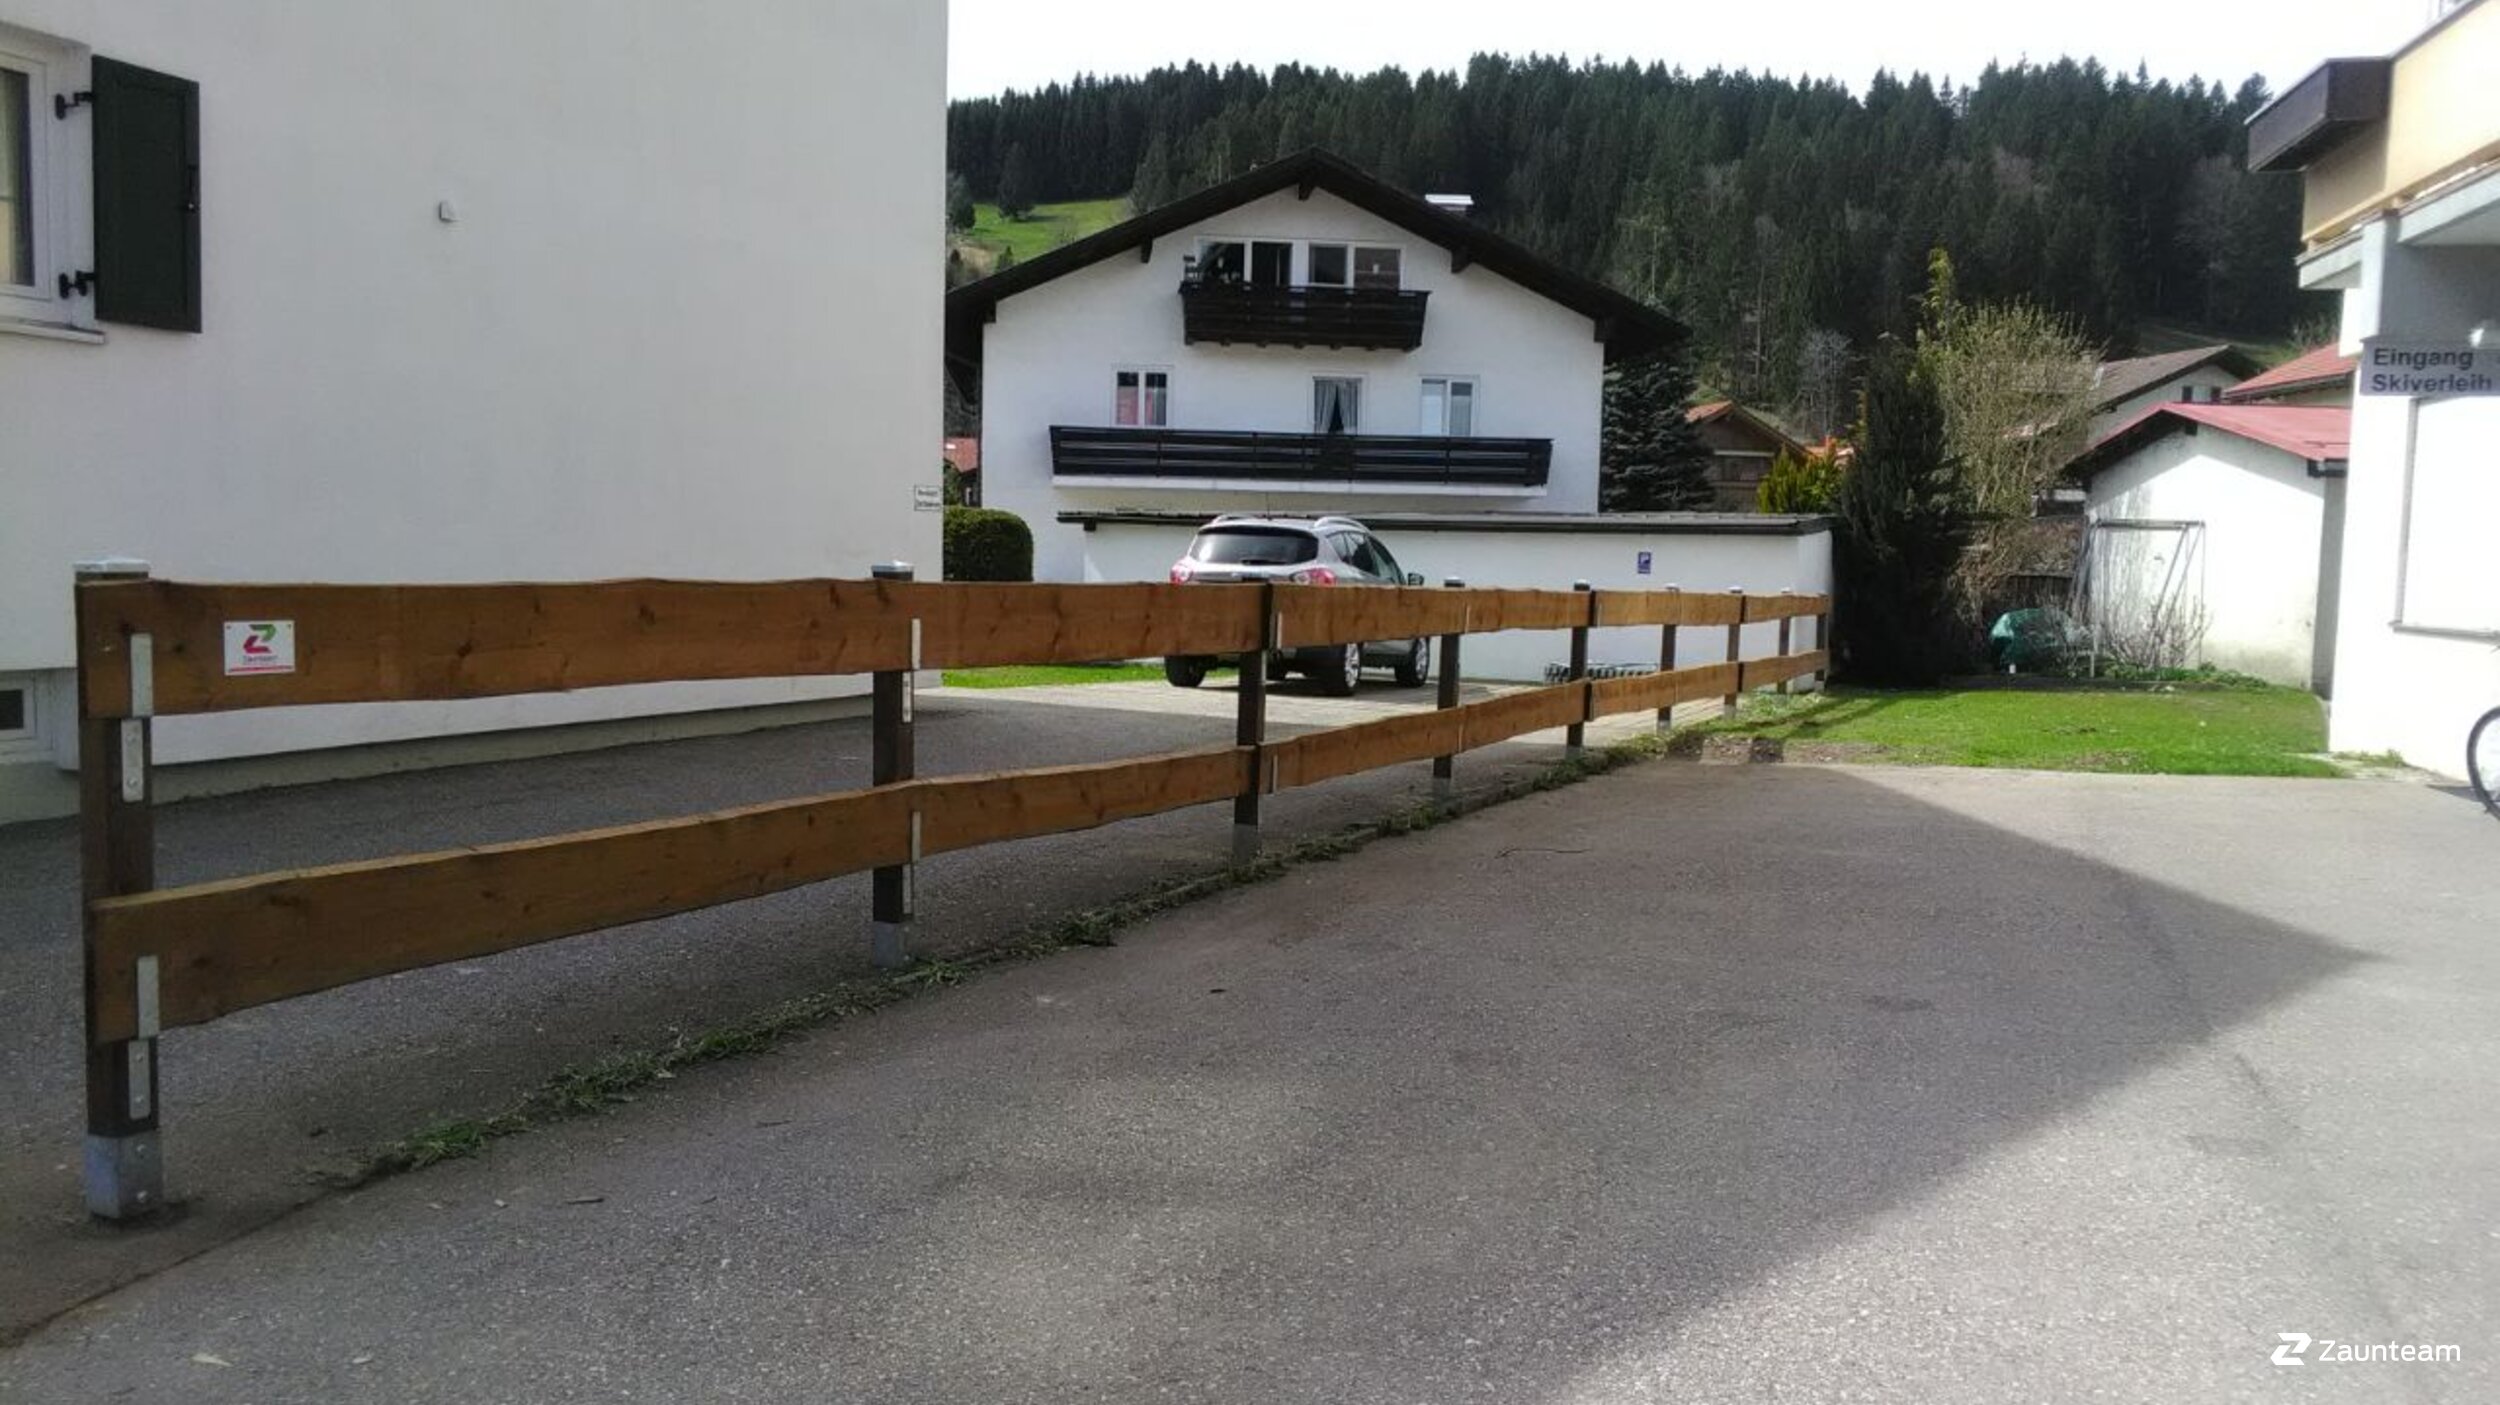 Clôture ranch de 2018 à 87534 Oberstaufen Allemagne de Zaunteam Allgäu.